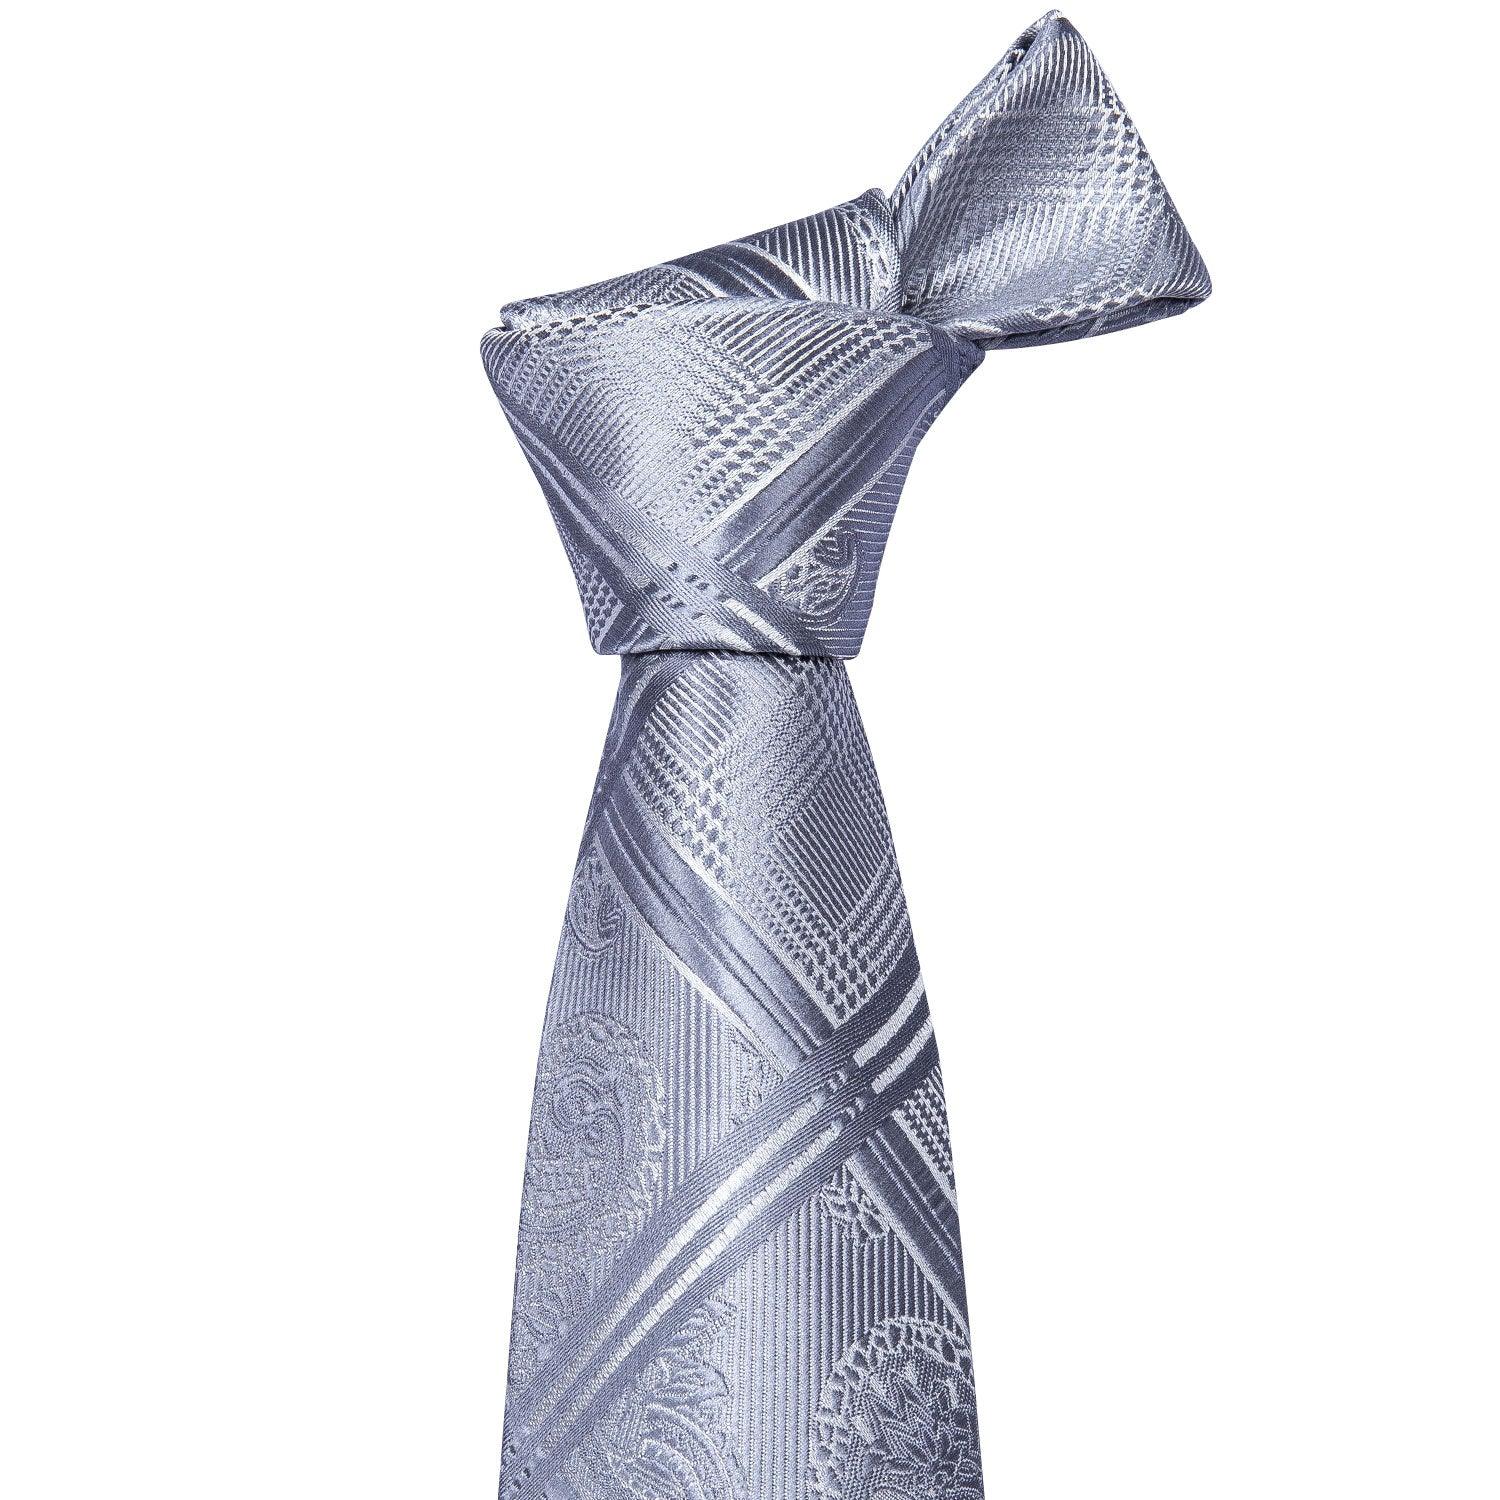 Plaid Gray Silver Silk Tie Pocket Square Cufflink Set - STYLETIE